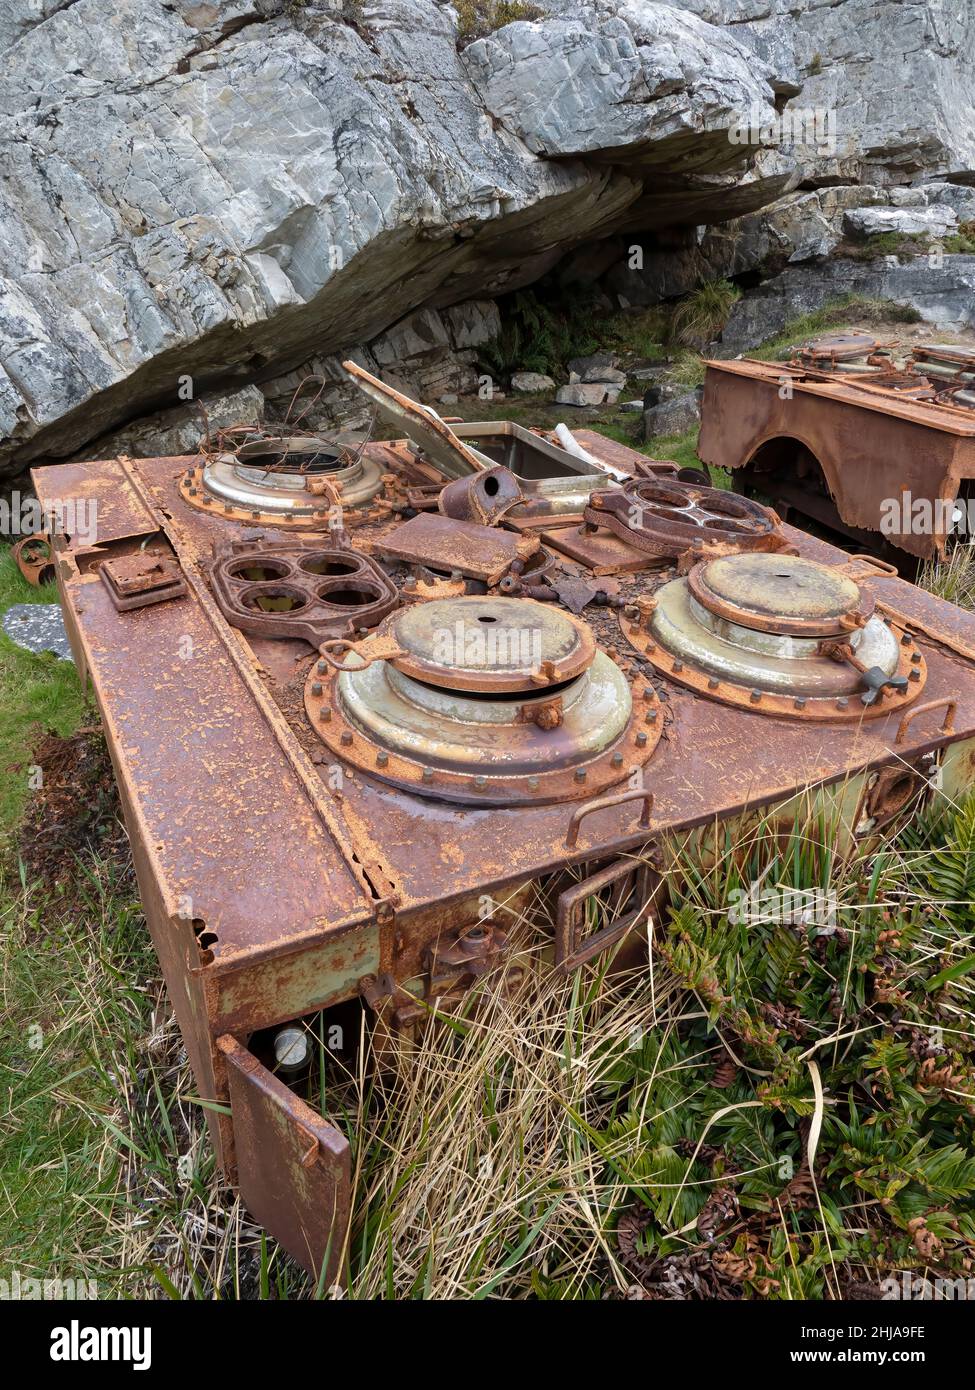 Station de préparation des aliments portable Argentine utilisée pendant le conflit de 1982 sur le montTumbledown, Falklands. Banque D'Images